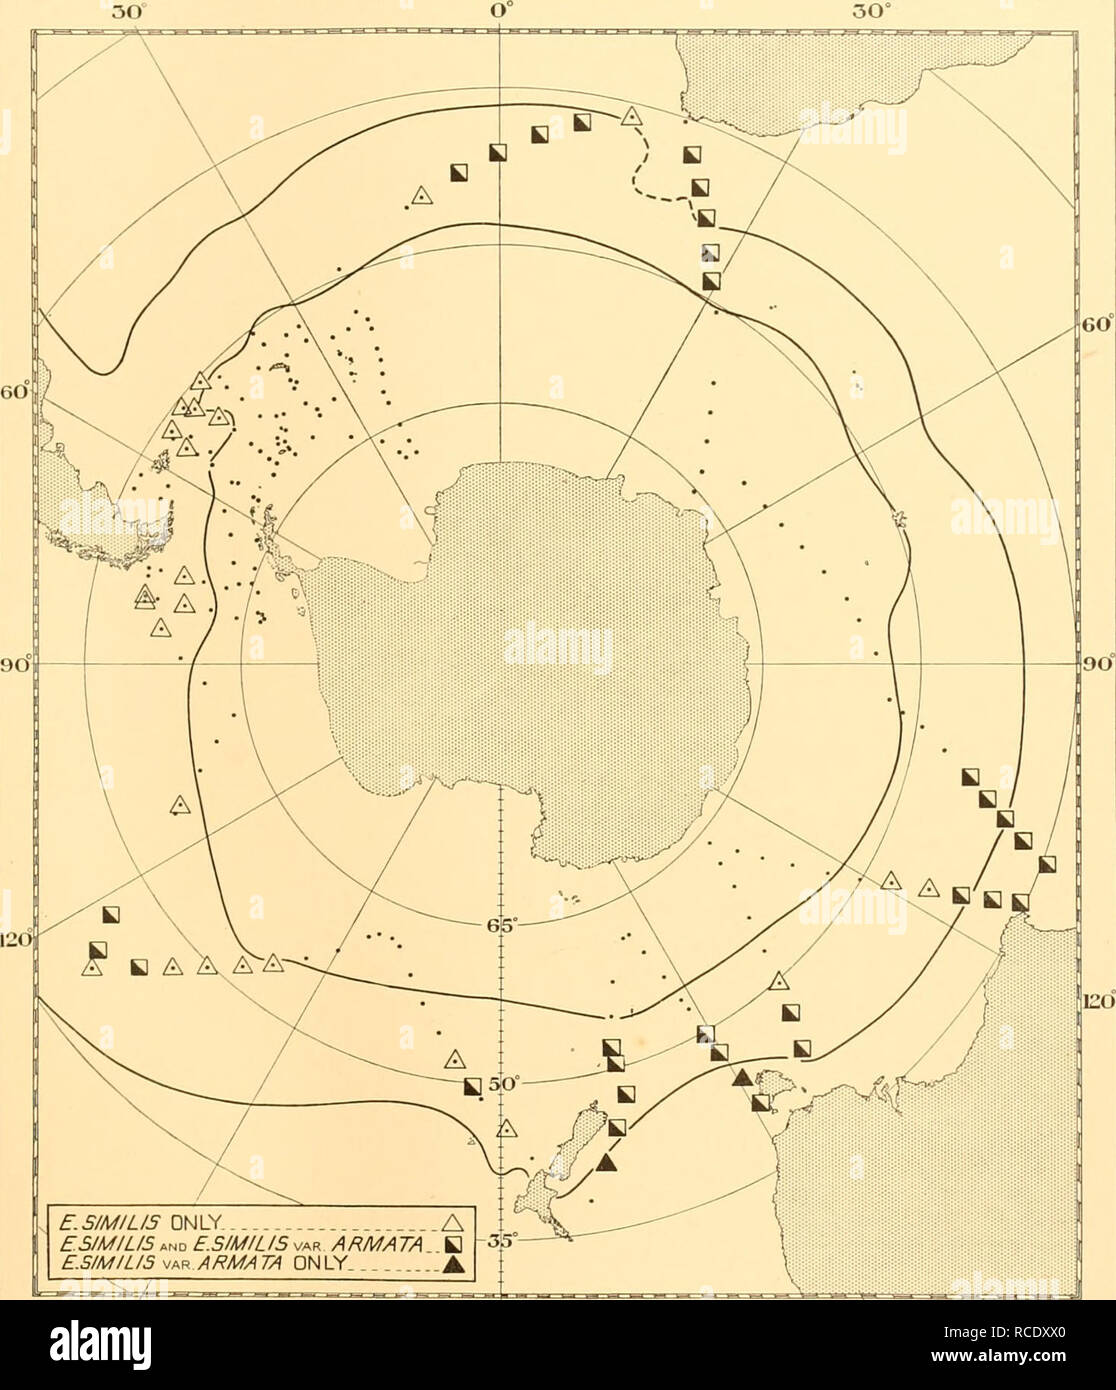 . Rapports de découverte. La découverte (navire) ; les expéditions scientifiques ; océan ; l'Antarctique, îles Falkland. Je lis 235 EUPHAUSIA CARTE SIM. F.P/M/G/S Dhiiy ESIMILIS UN ET F.SIMILIS var ARMATA B F.P/M/G/S -j^  150 R ARMATA SEULEMENT 180°ouest à l'Est 150° Fig. 26. Tableau montrant la présence de E. similis et E. similis var. armata aux stations des enquêtes des îles Falkland privé dans les étés de 1931-2 et 1932-3, et de l'univers circumpolaire cruises de février à octobre 1932. L'intérieur des deux lignes épaisses représente la convergence Antarctique, l'extérieur la sous- convergence antarctique. 6-2. Veuillez noter que ces im Banque D'Images